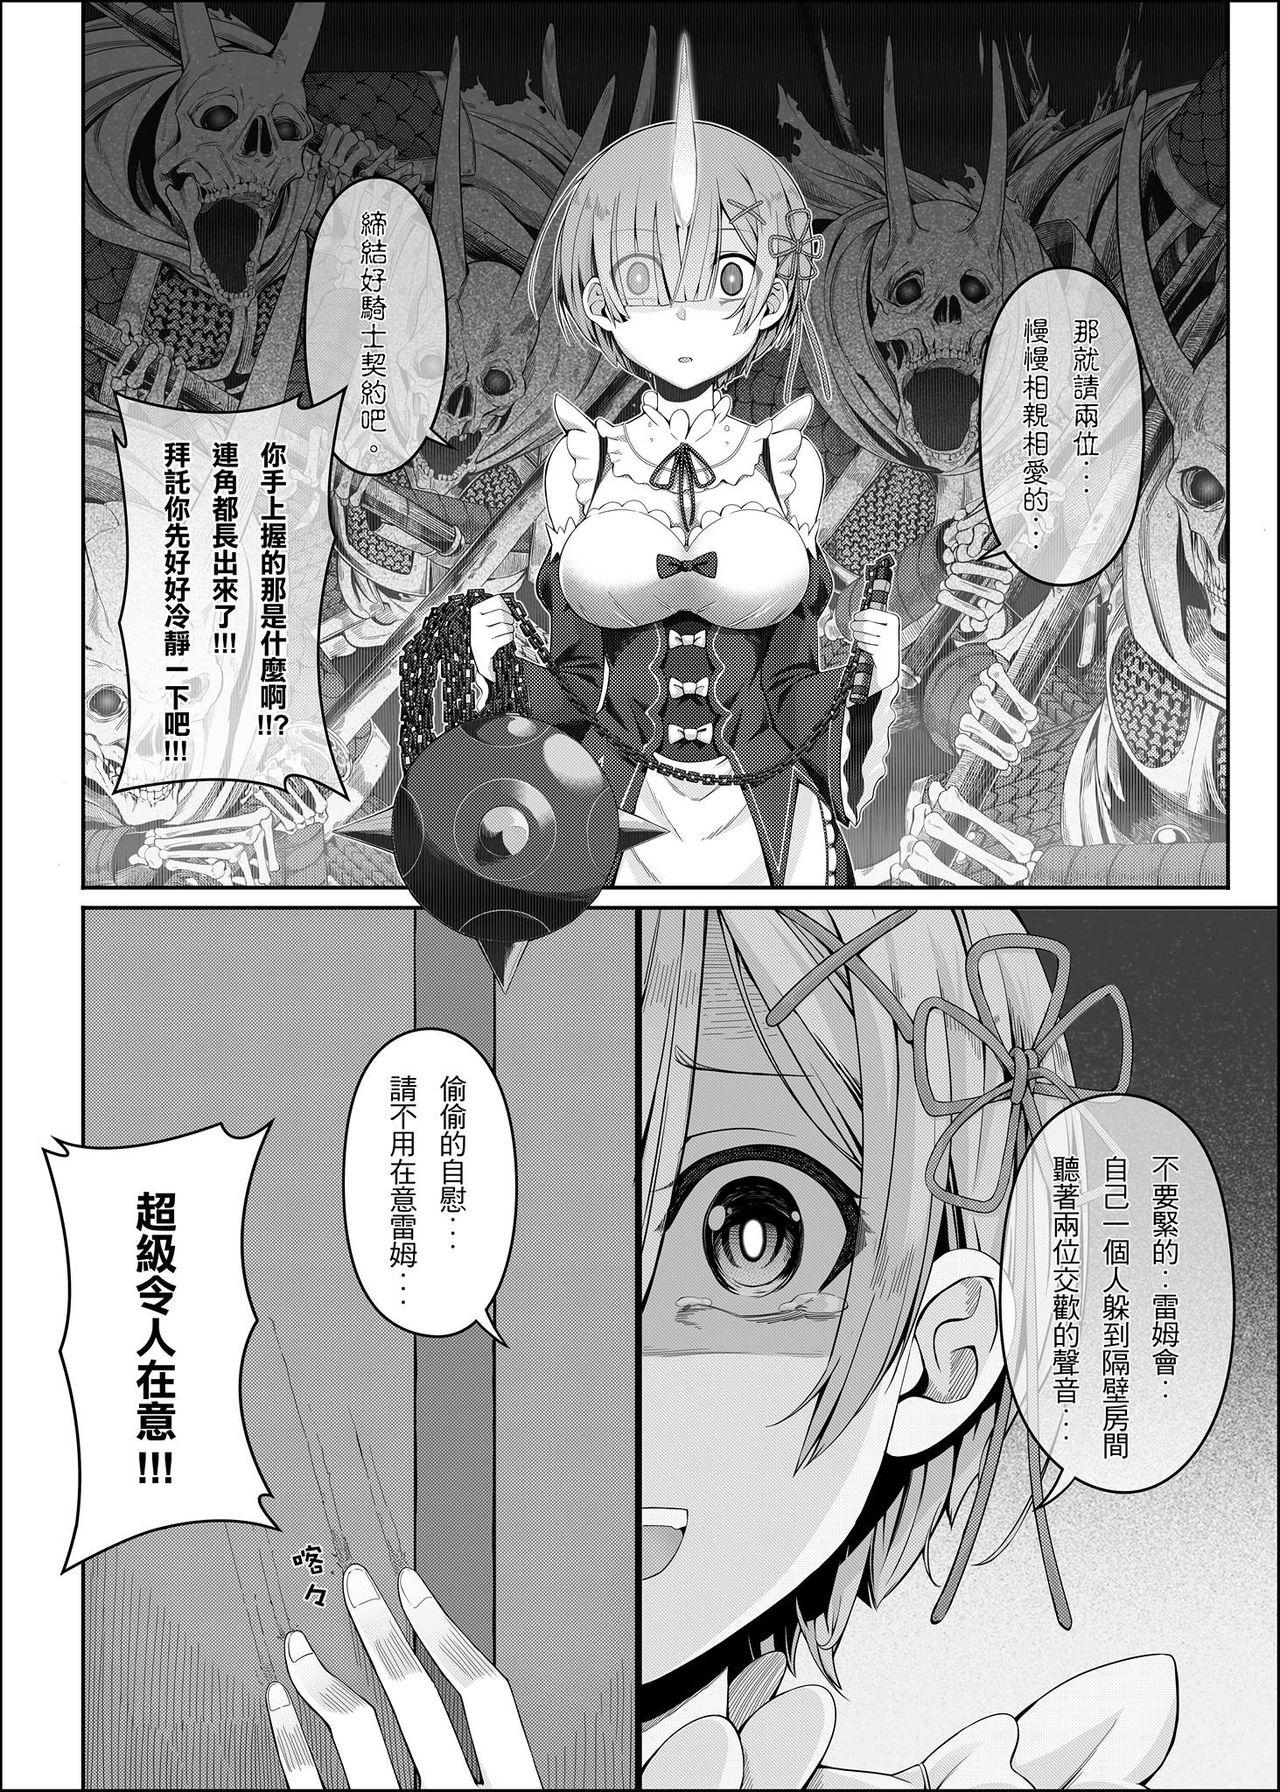 Siririca RE:0 - Jishou Kishidou - Re zero kara hajimeru isekai seikatsu Officesex - Page 9